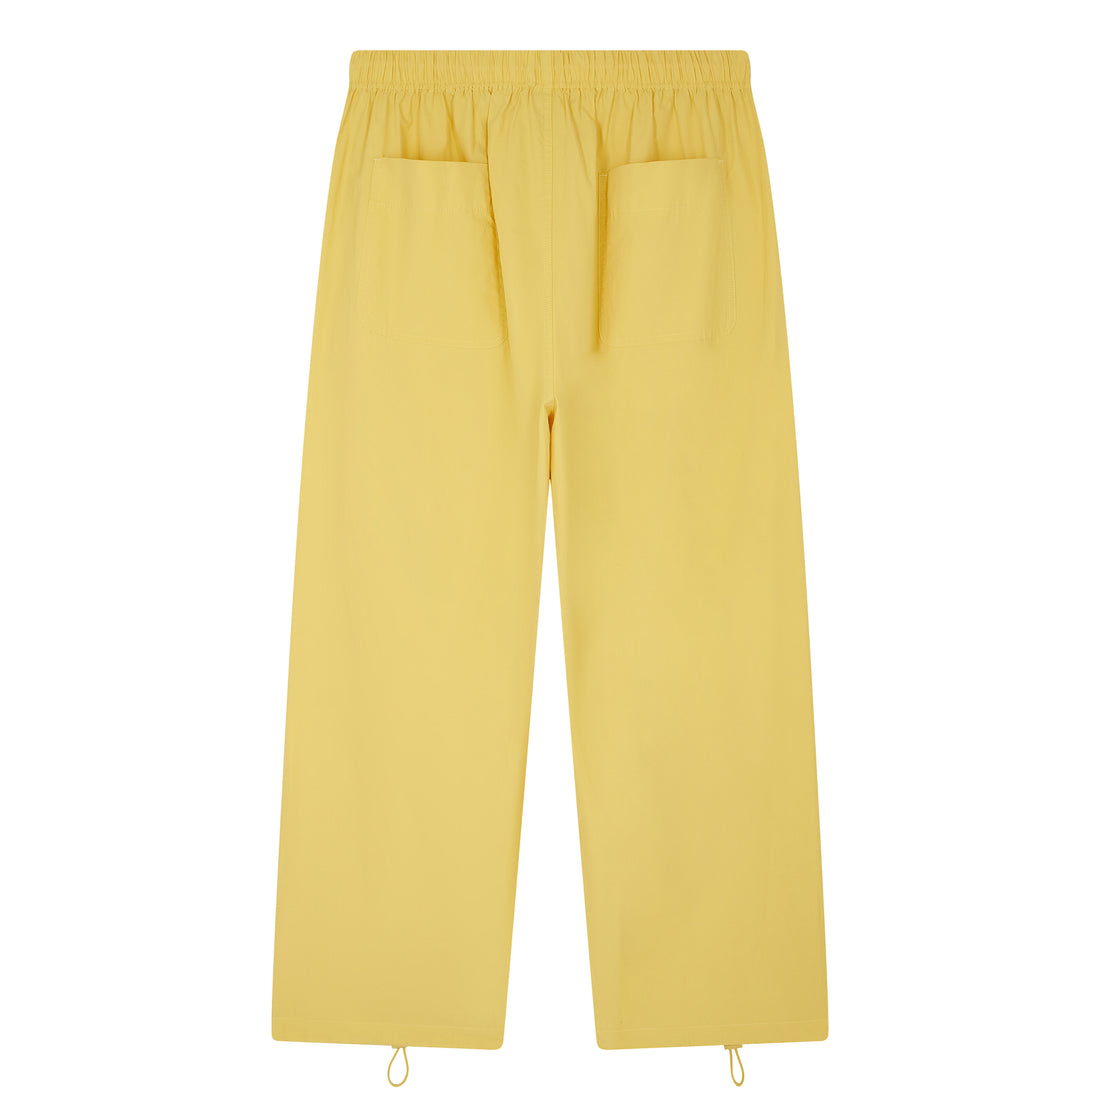 Le pantalon parachute jaune